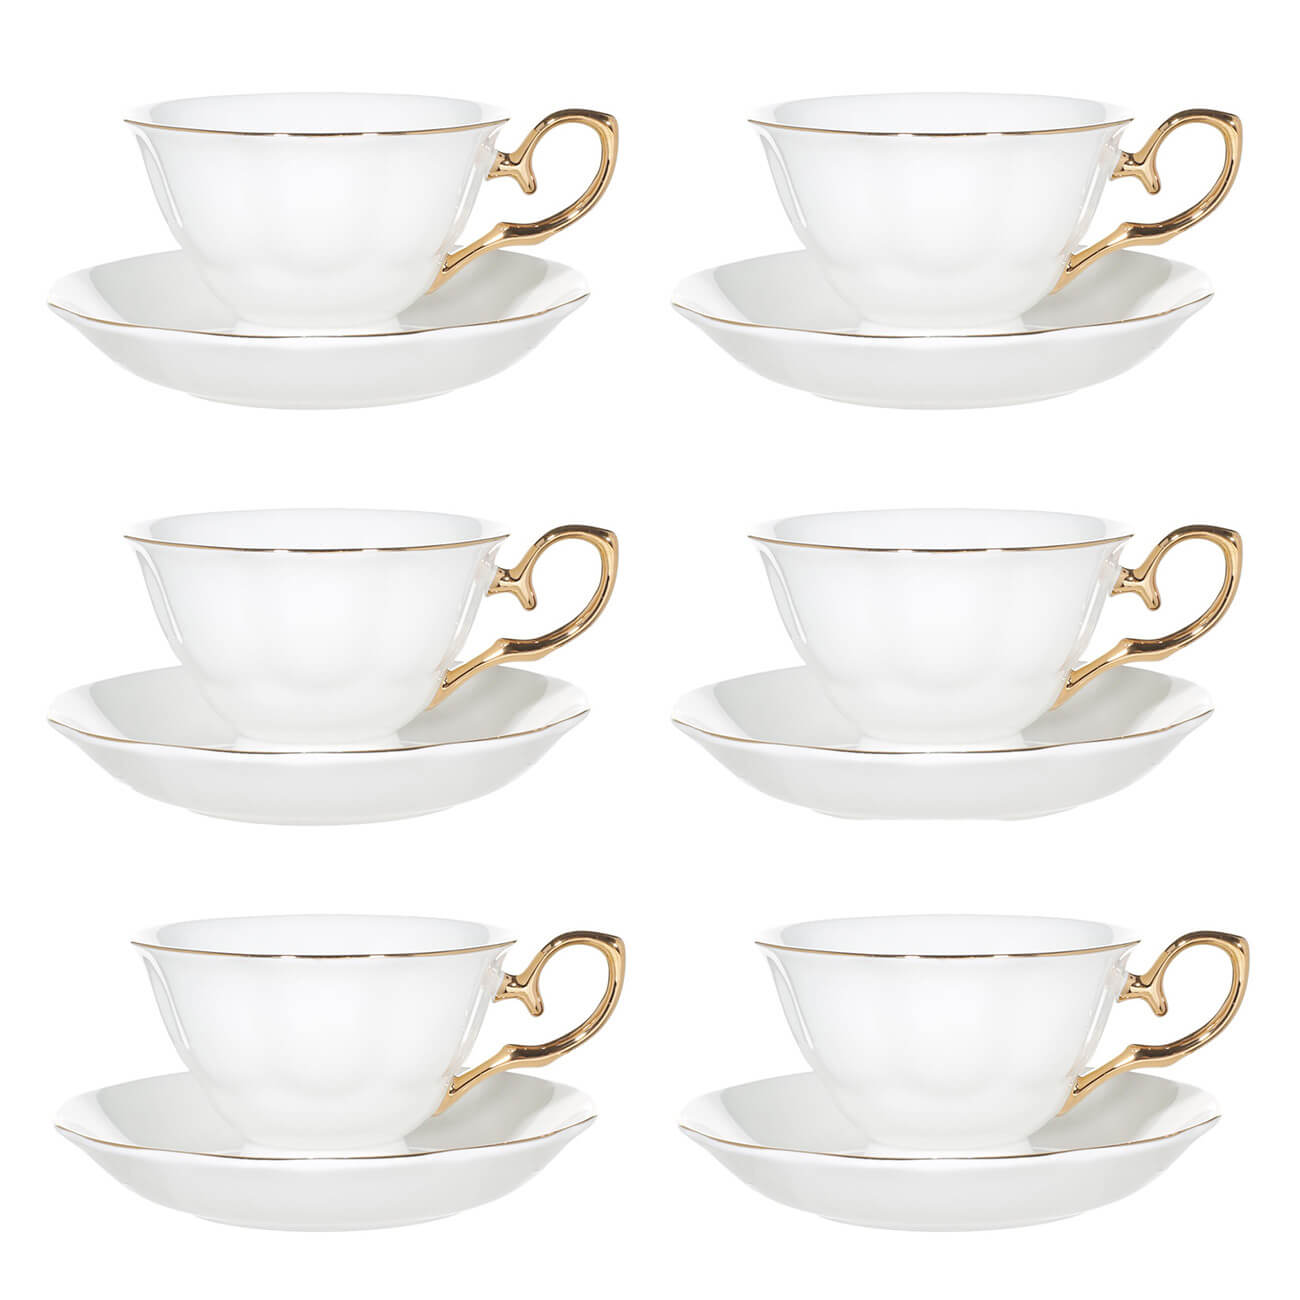 Пара чайная, 6 перс, 12 пр, 180 мл, фарфор F, бело-золотистая, Premium Gold чайная чашка ангел фарфор серебро